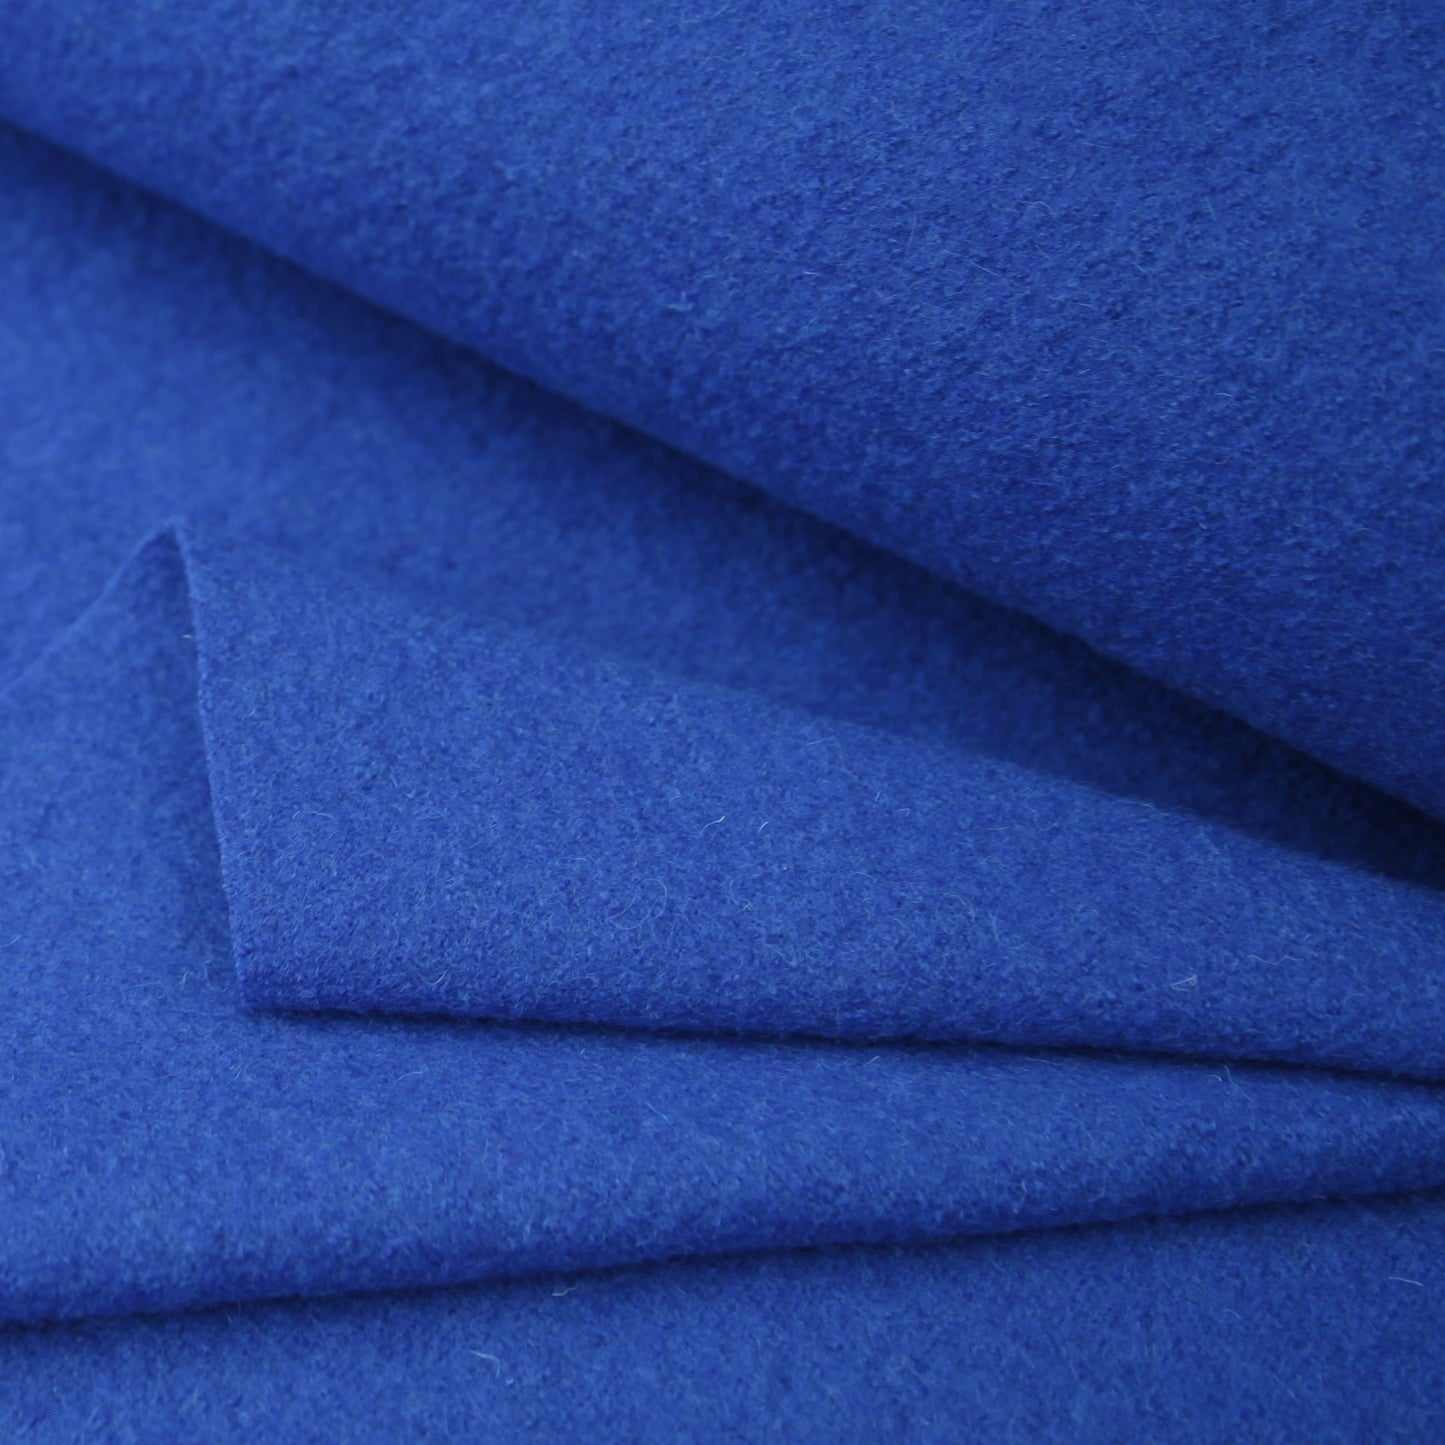 Kochwolle - Walkloden - Wolle - Trachten in der Farbe RoyalblauWollstoffeStoffe KudellinoStoffe Kudellino